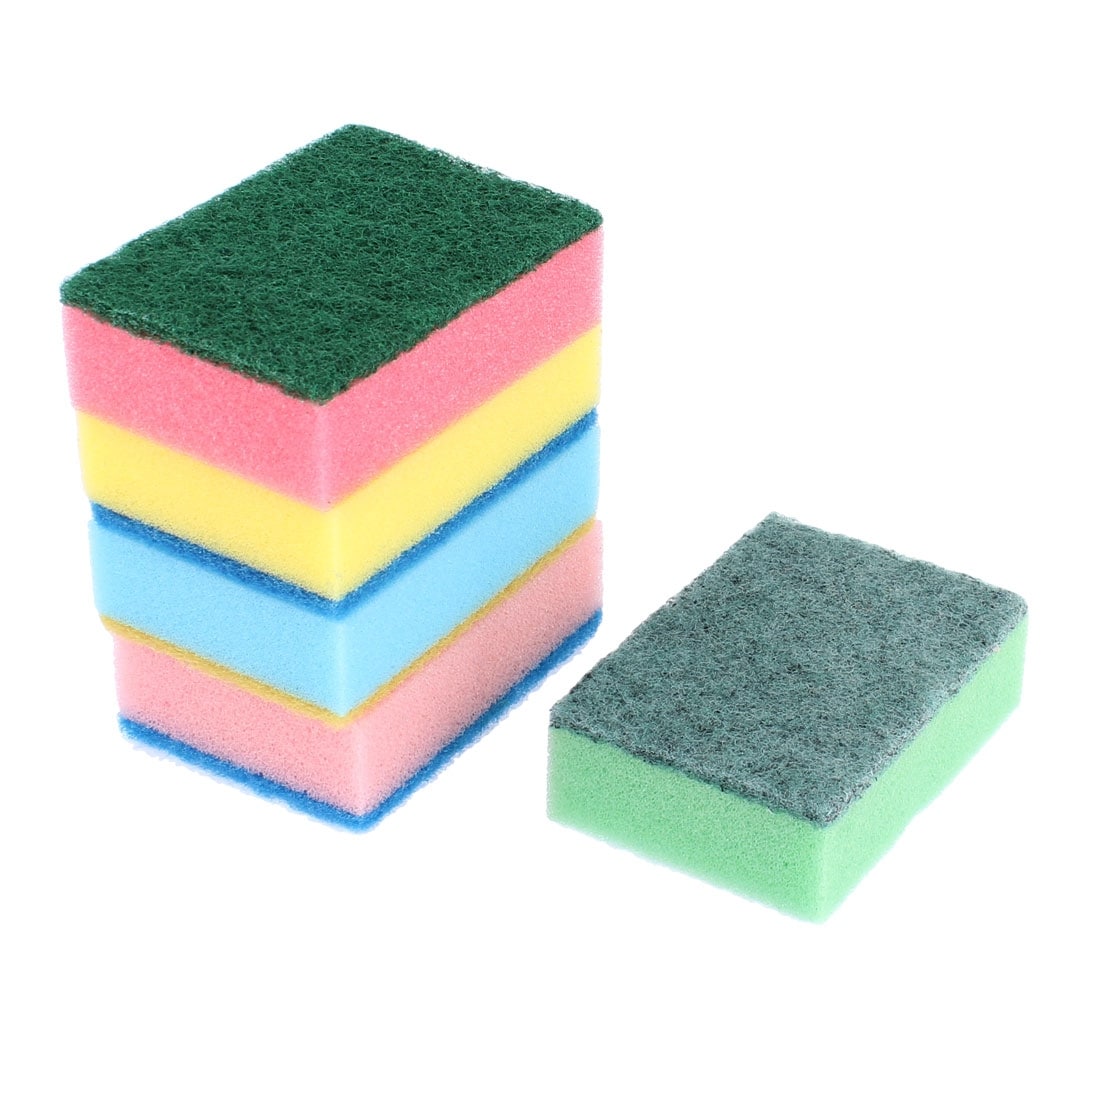  Car Wash Sponges 5pcs Mix Colors Cleaning Scrubber